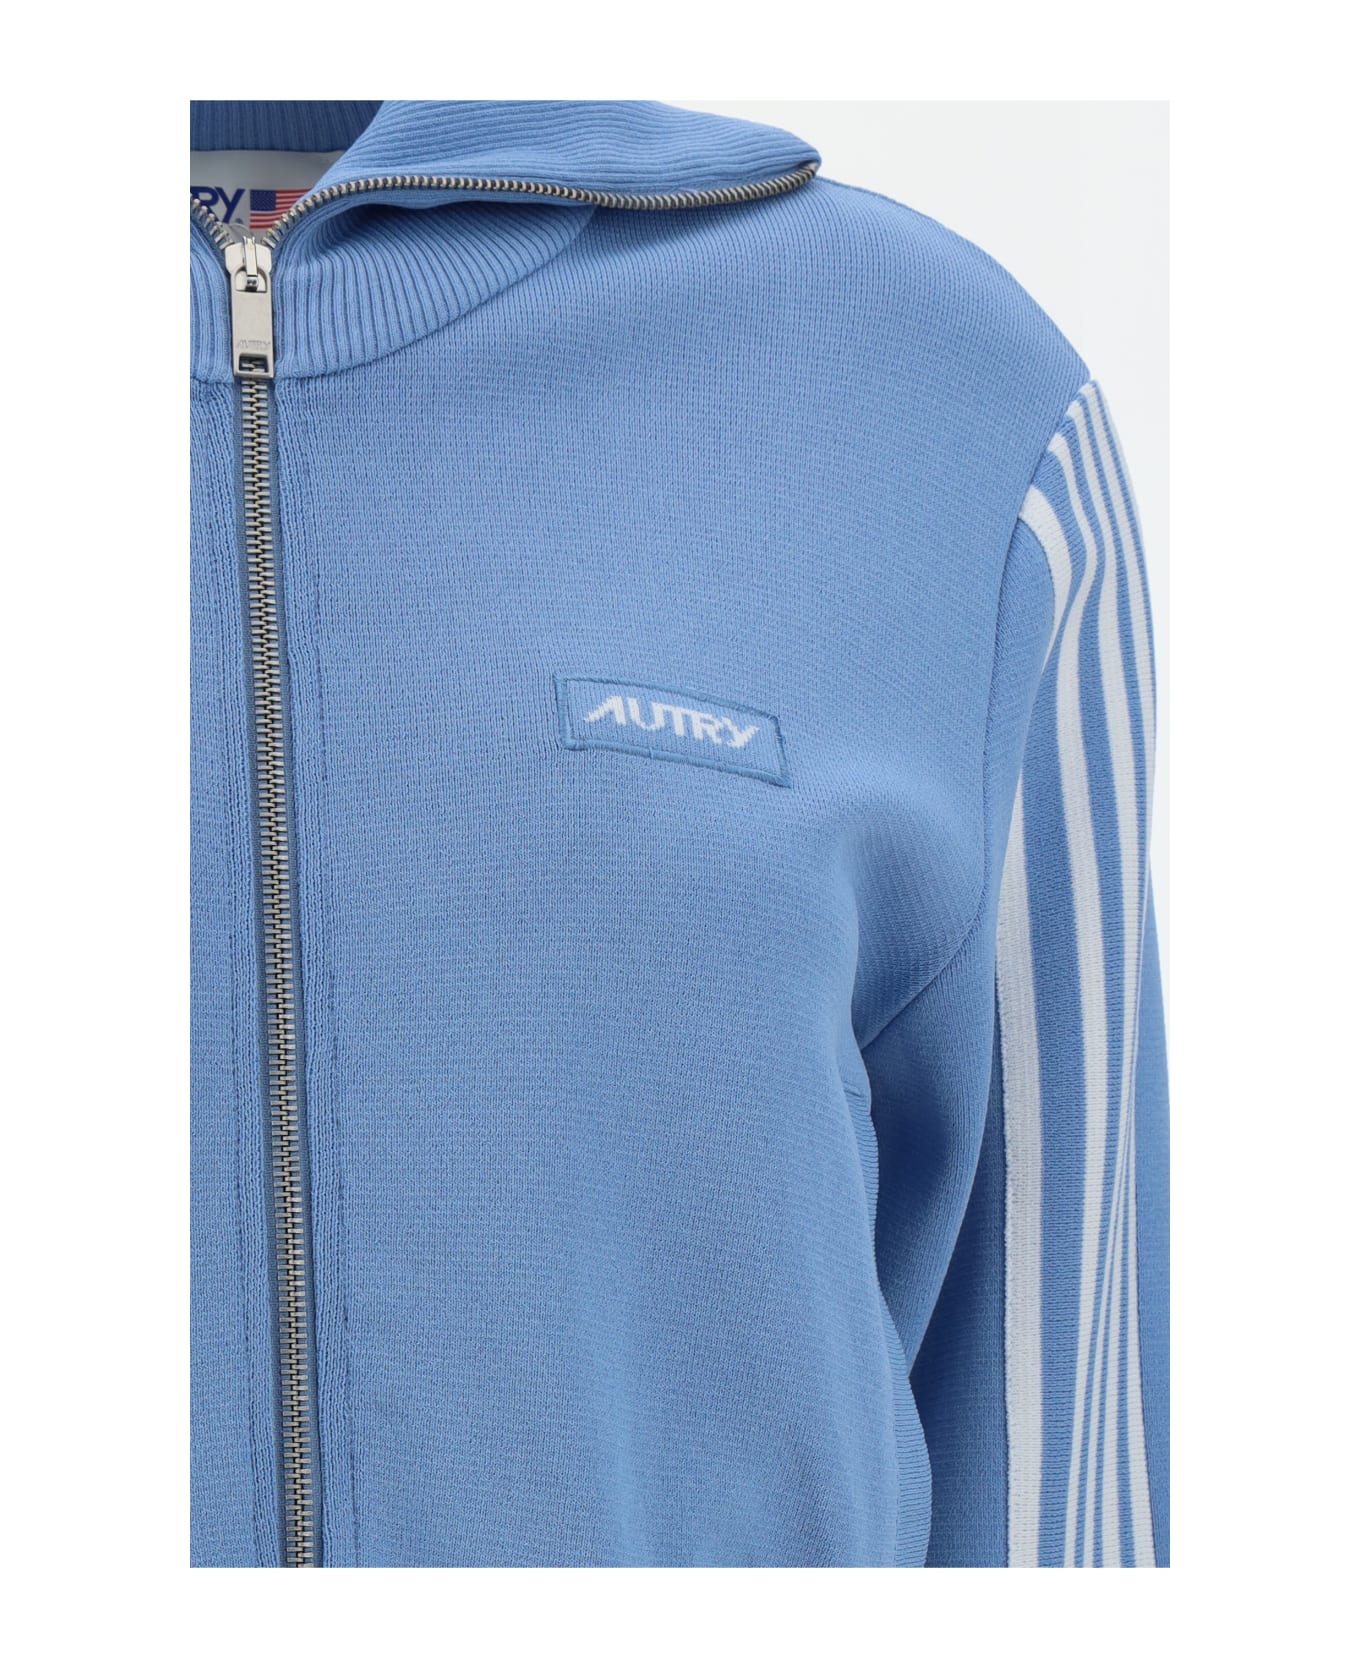 Autry Zipper Sweatshirt - Azure